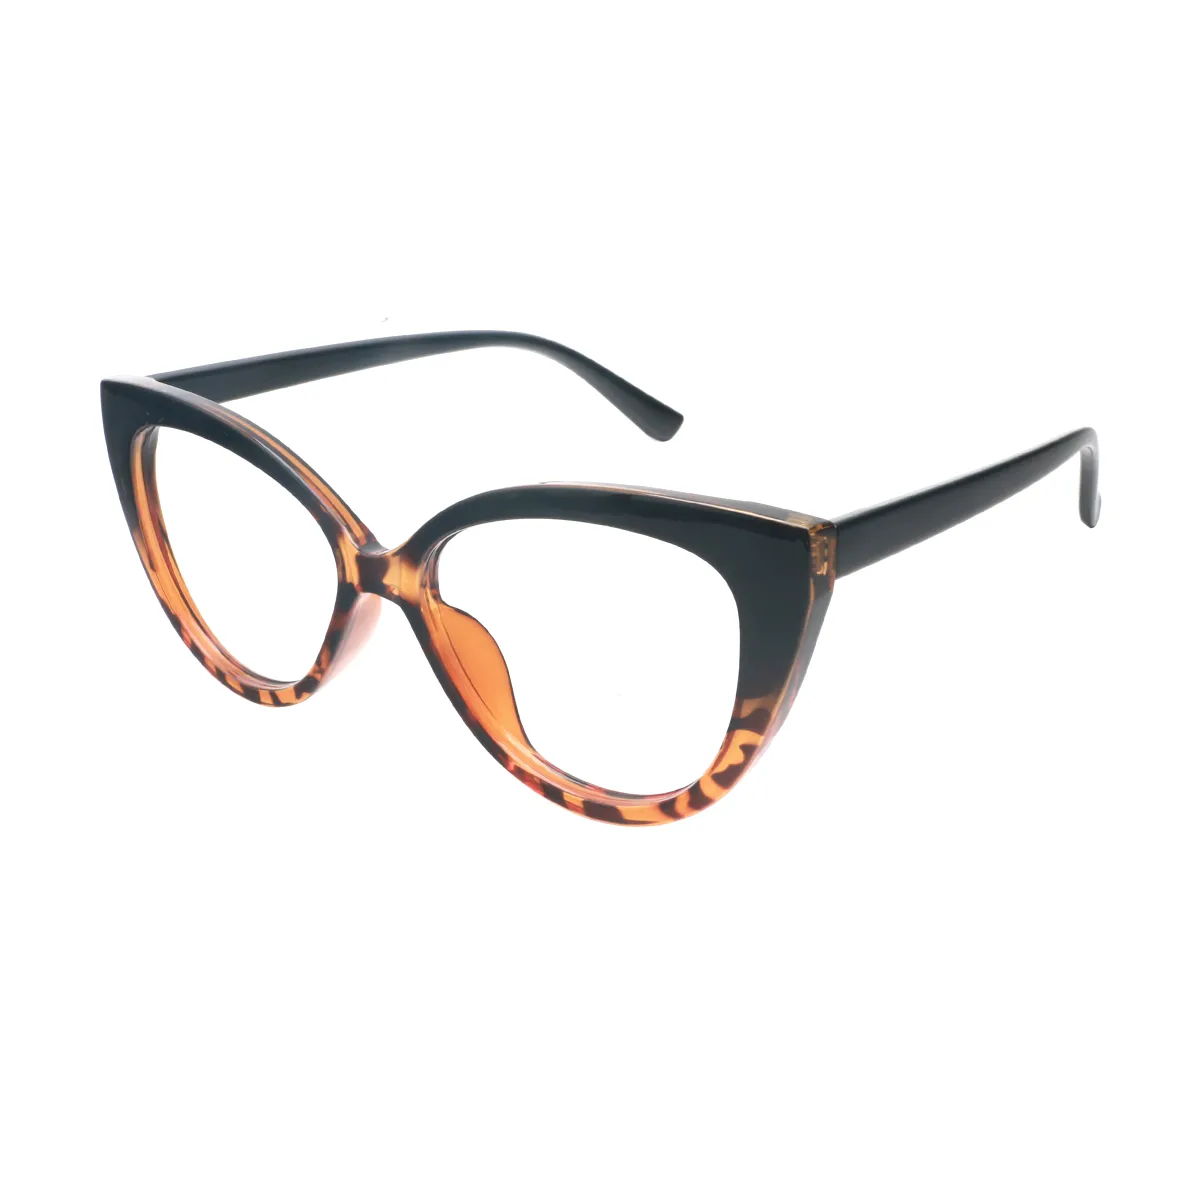 Leila - Cat-eye Tortoiseshell Glasses for Women - EFE